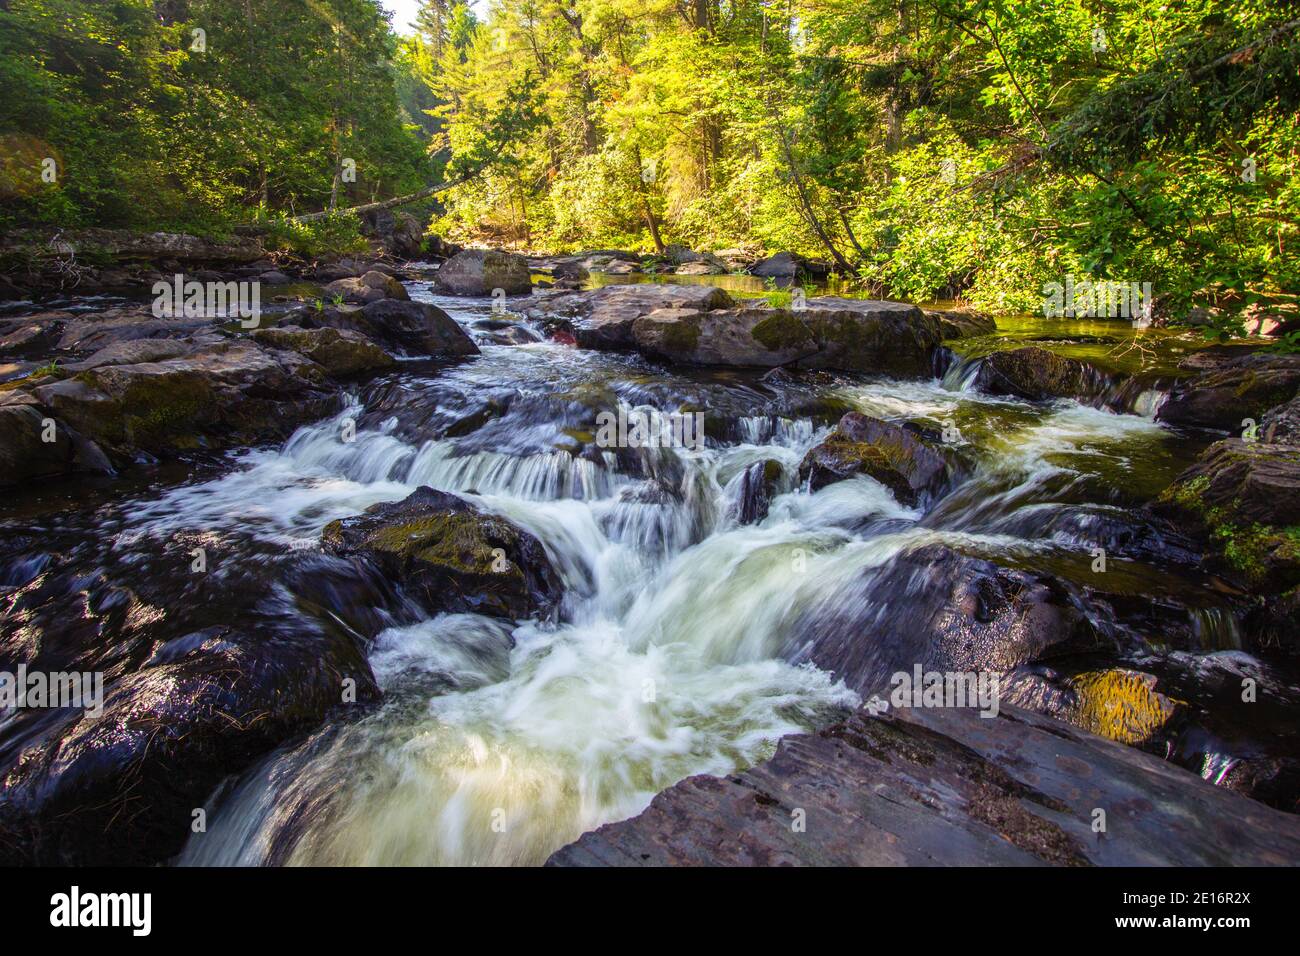 Michigan Upper Peninsula Waterfall Landscape. Silver Falls è una delle numerose cascate situate nella foresta della contea di Baraga, Michigan. Foto Stock